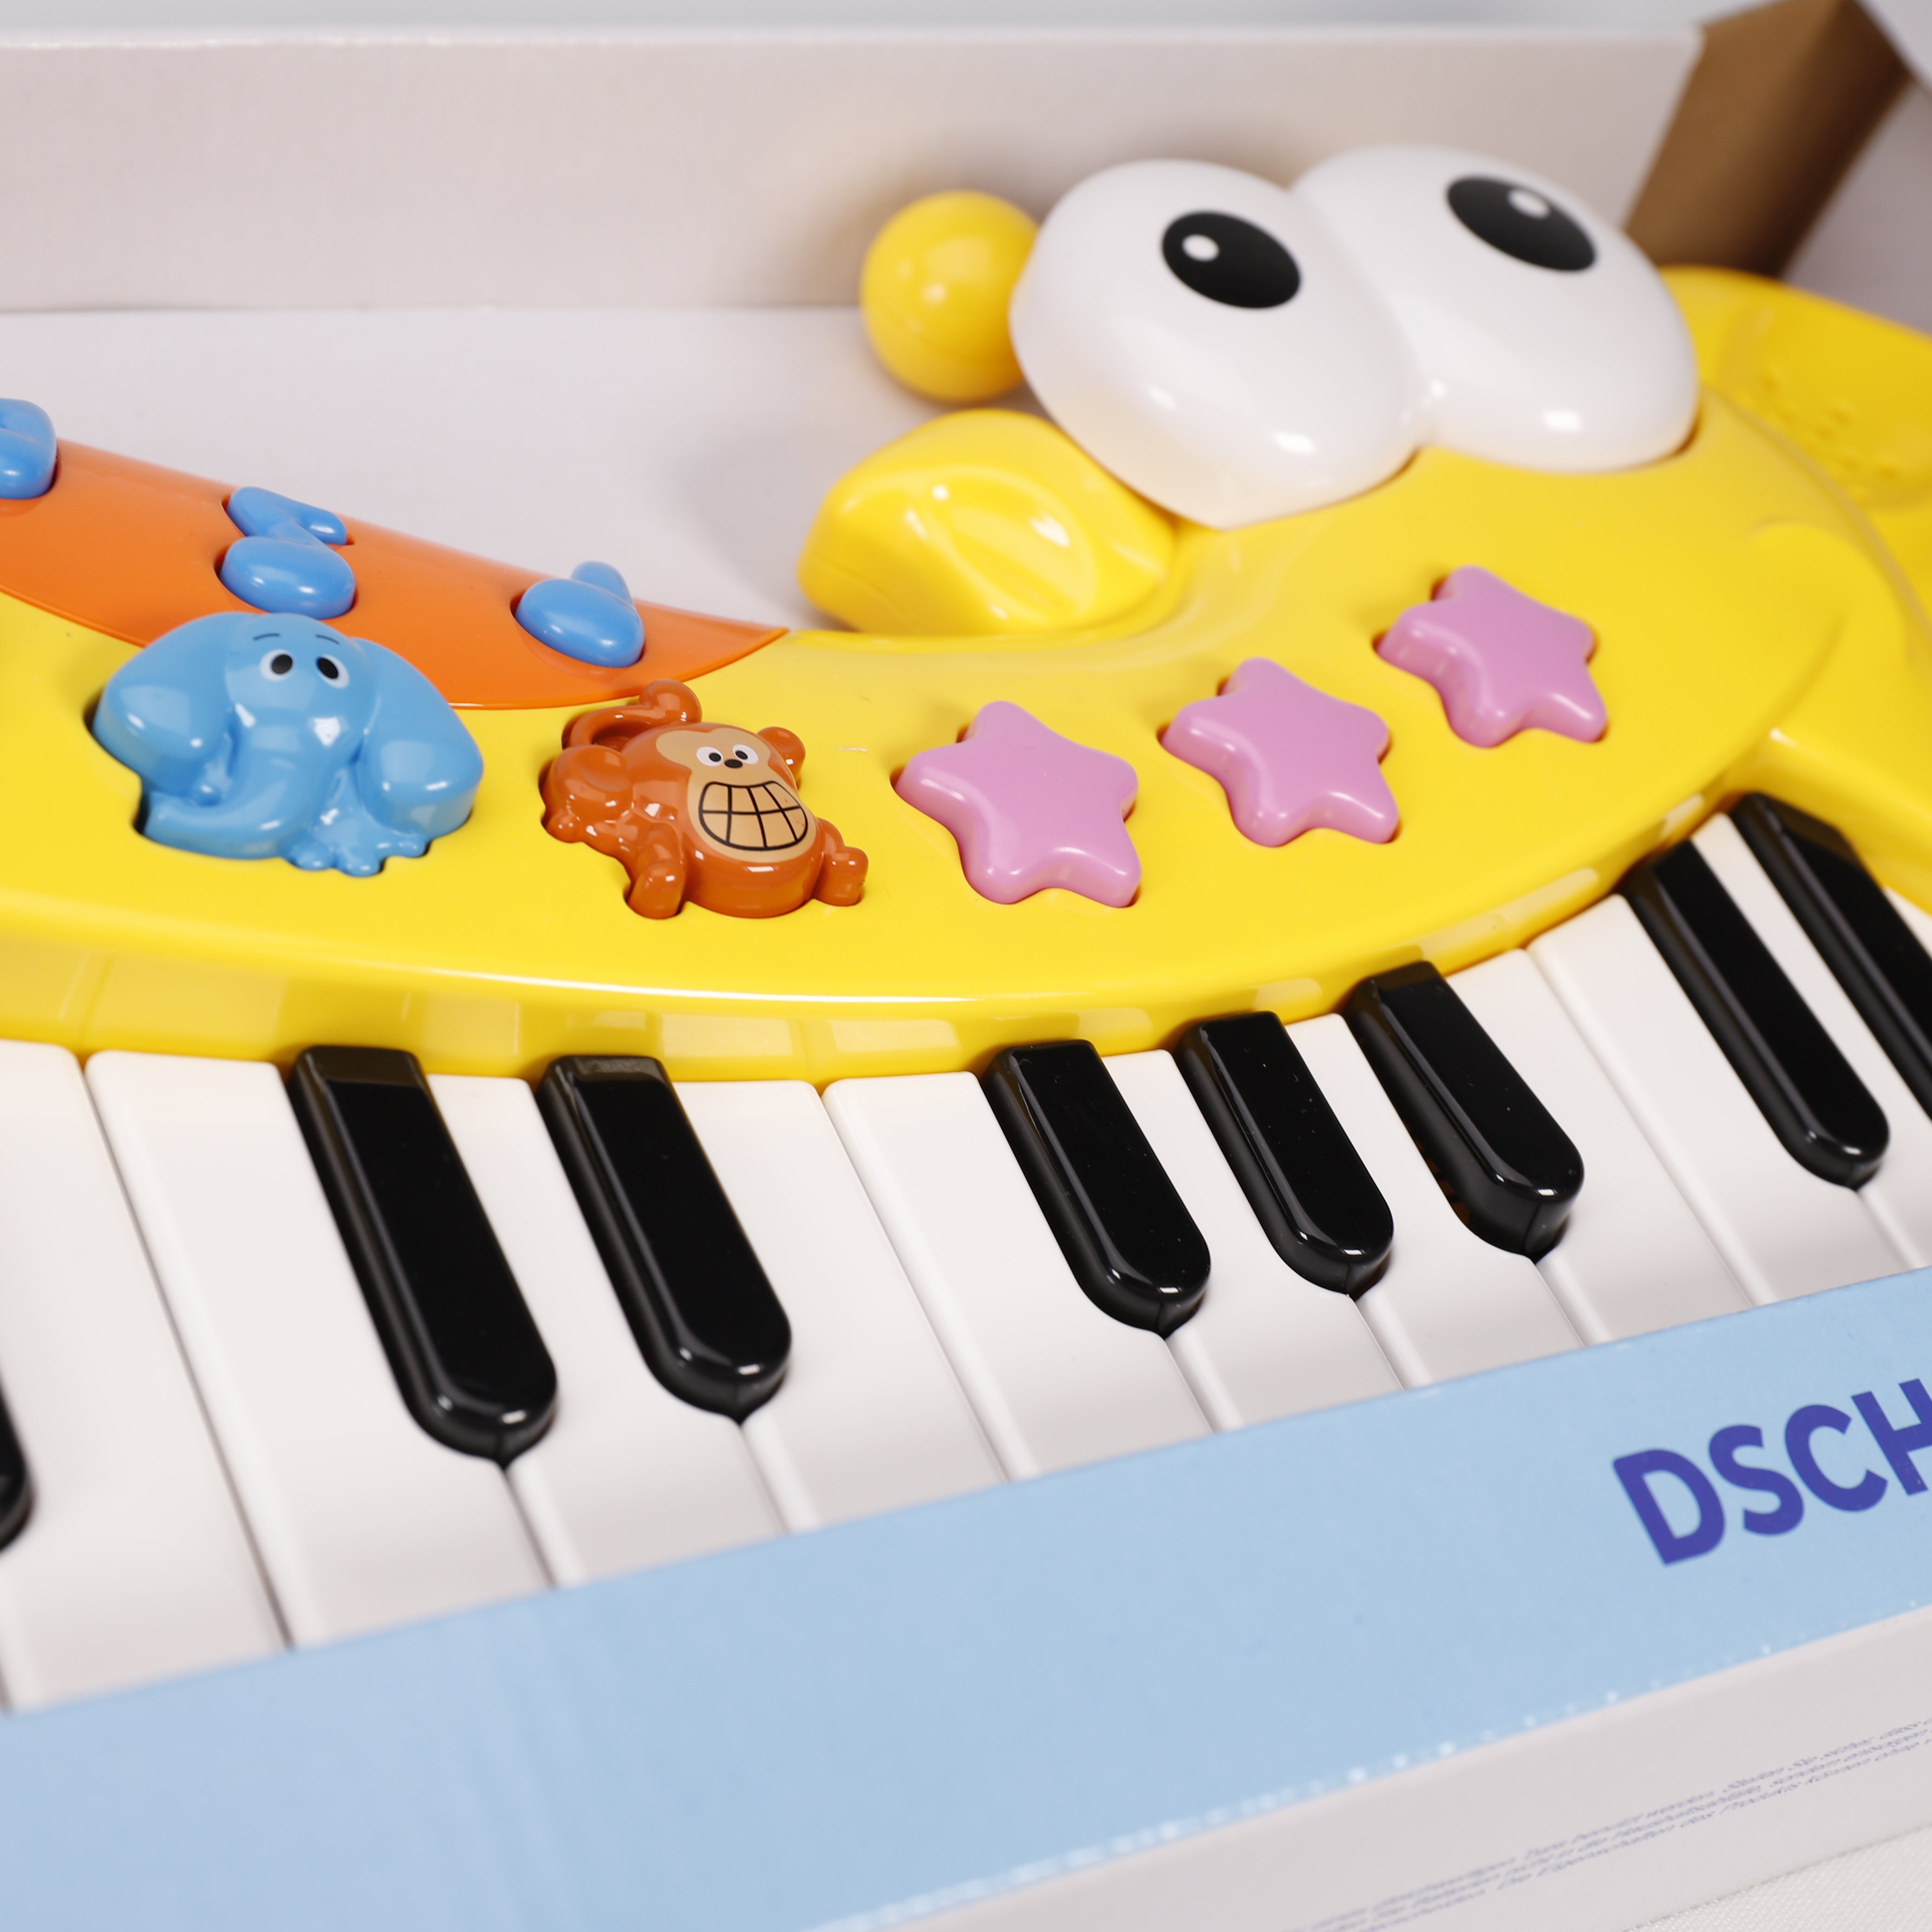 Keyboard 24 Tasten, Klavier Spielzeug, Dschungel, 25 X 45 cm, Musik, K –  OMA Geschenke